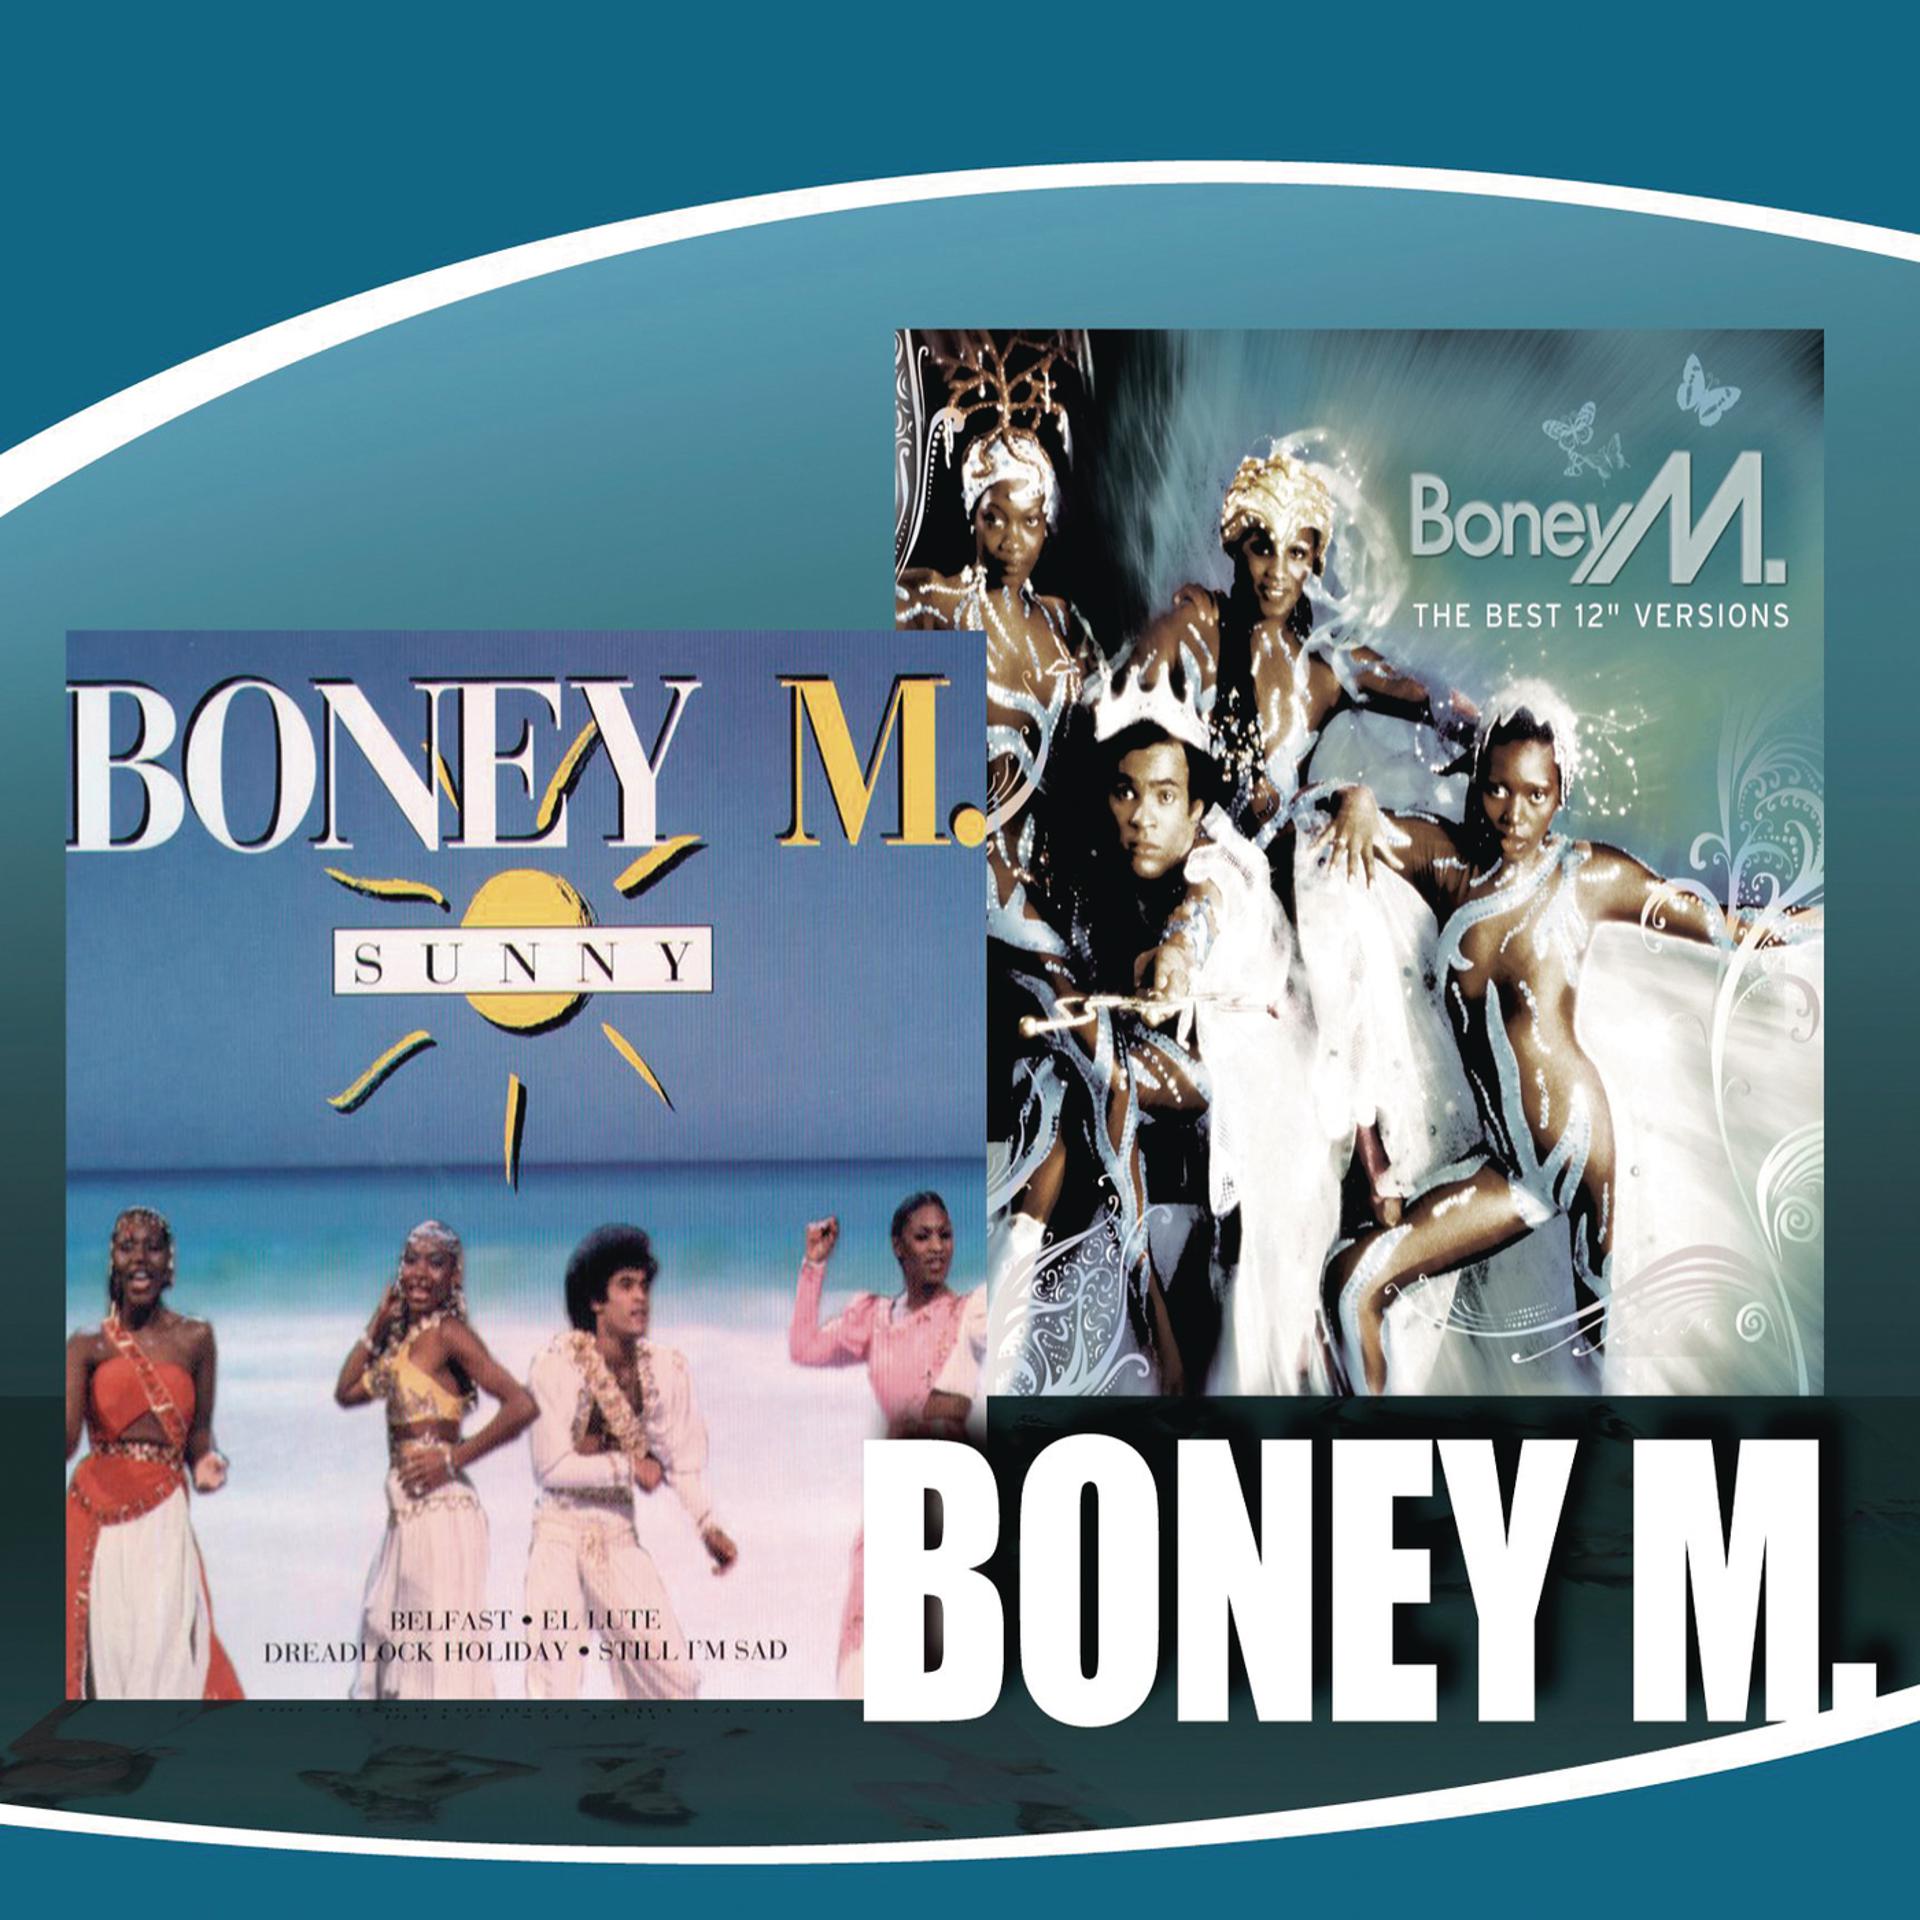 Boney m Sunny обложка. Boney m обложки альбомов. Boney m 2014. Первый состав Boney m. Boney m kalimba de